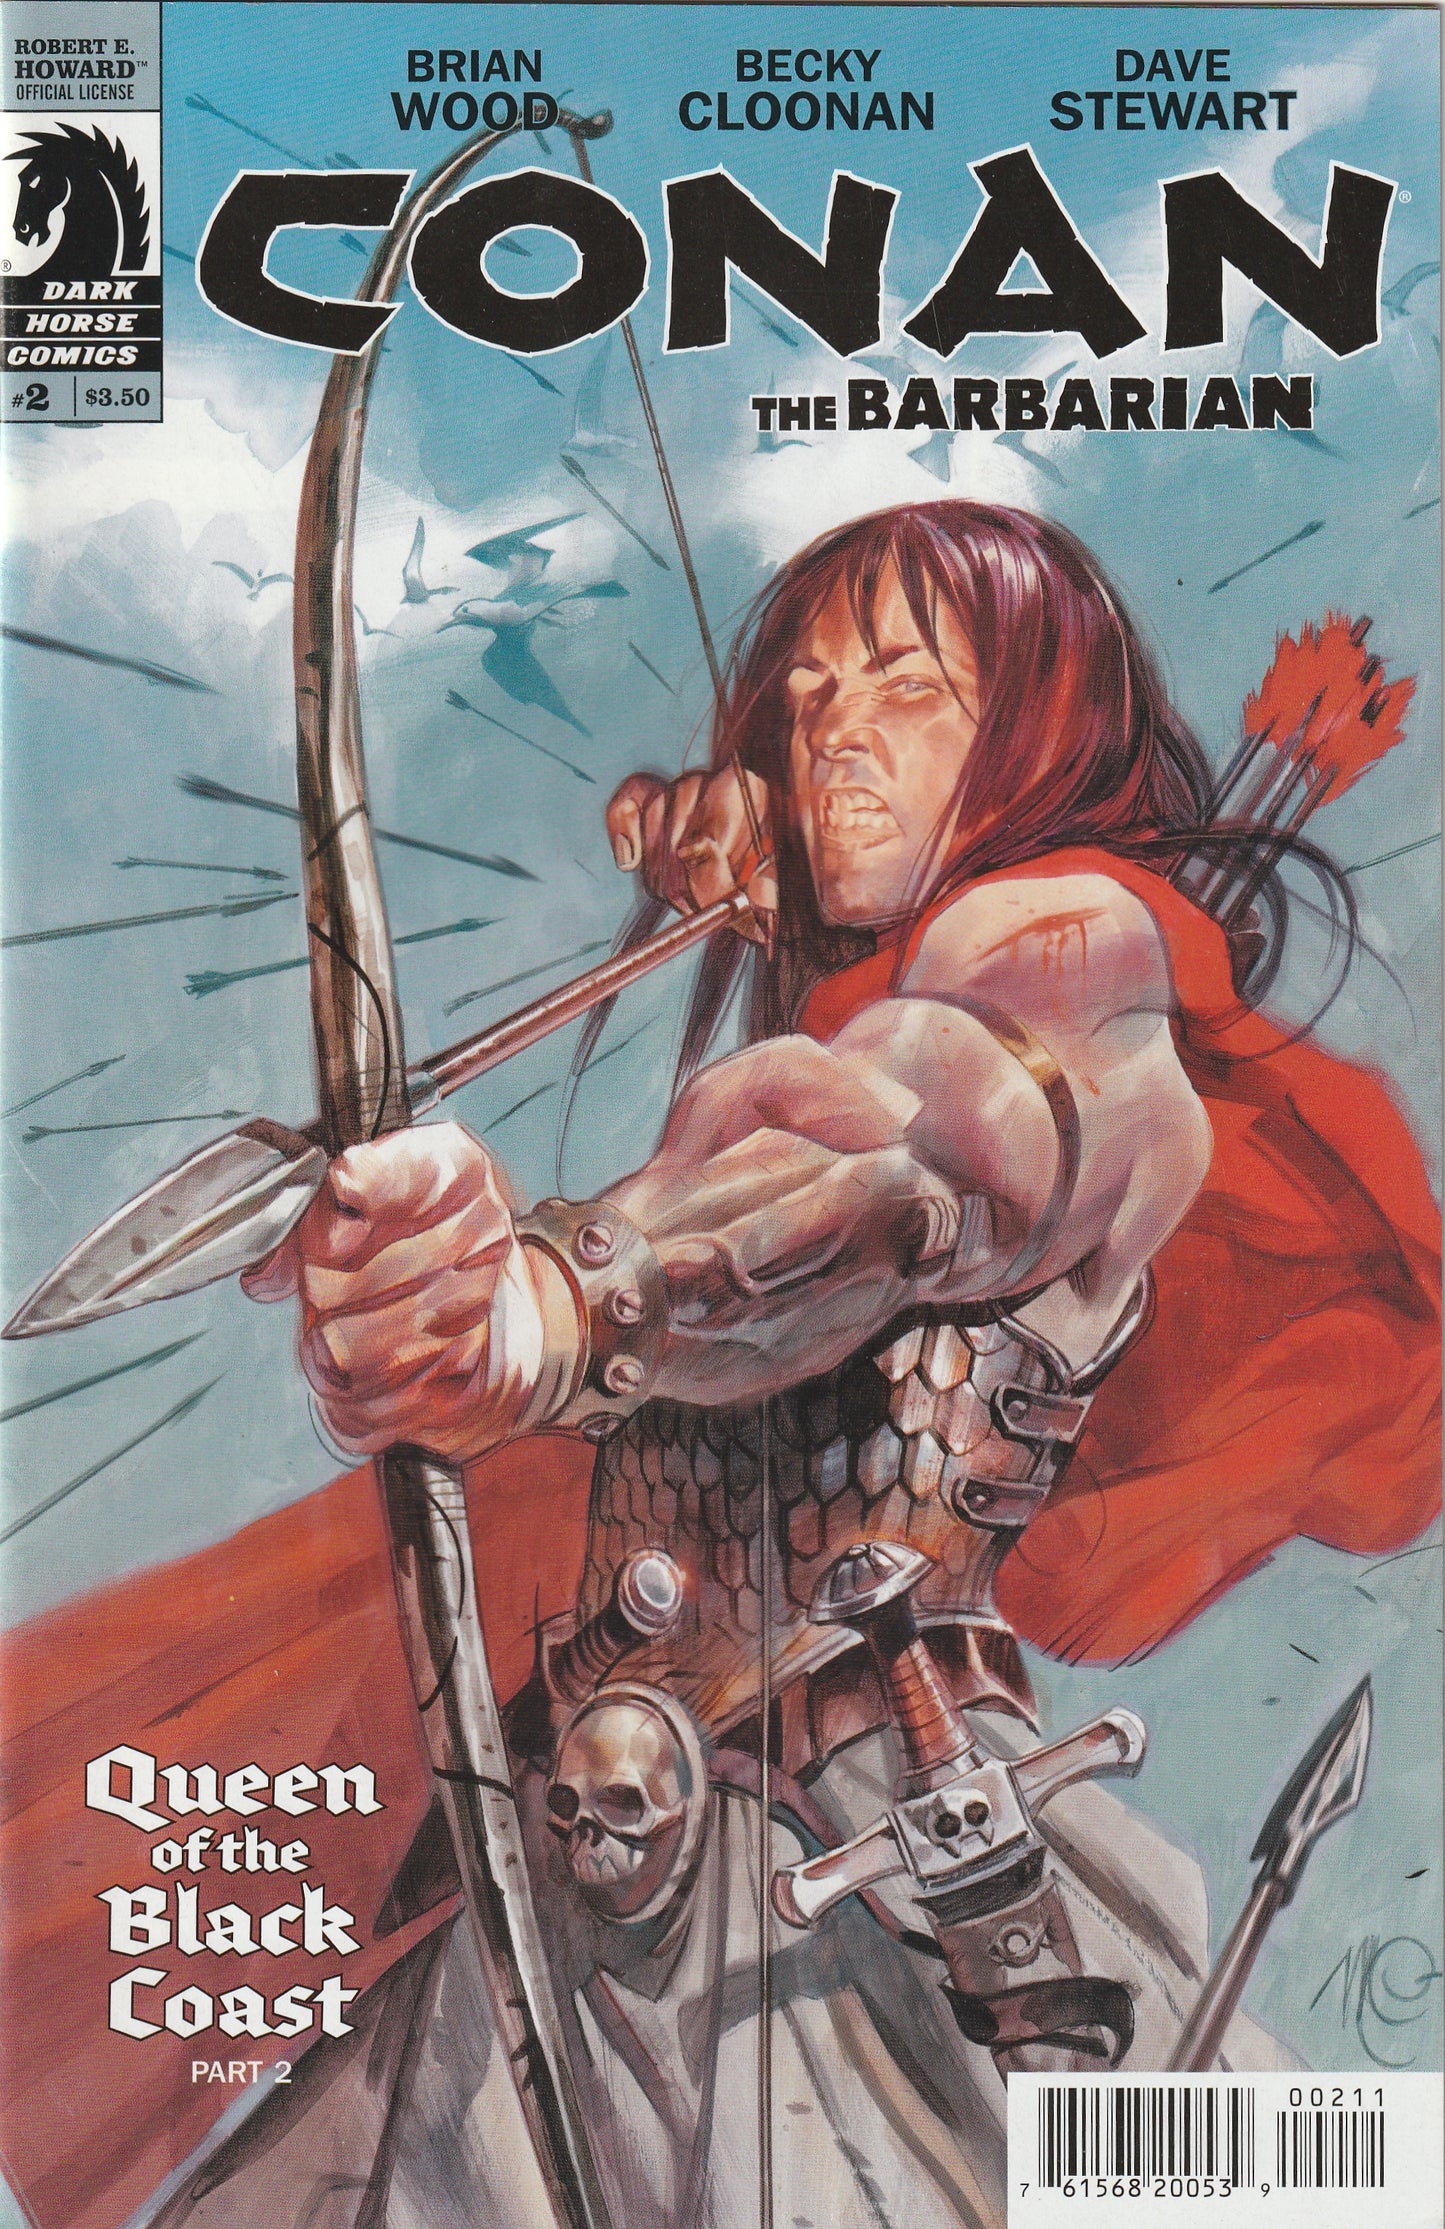 Conan The Barbarian #2 (2012) - Brian Wood, Becky Cloonan